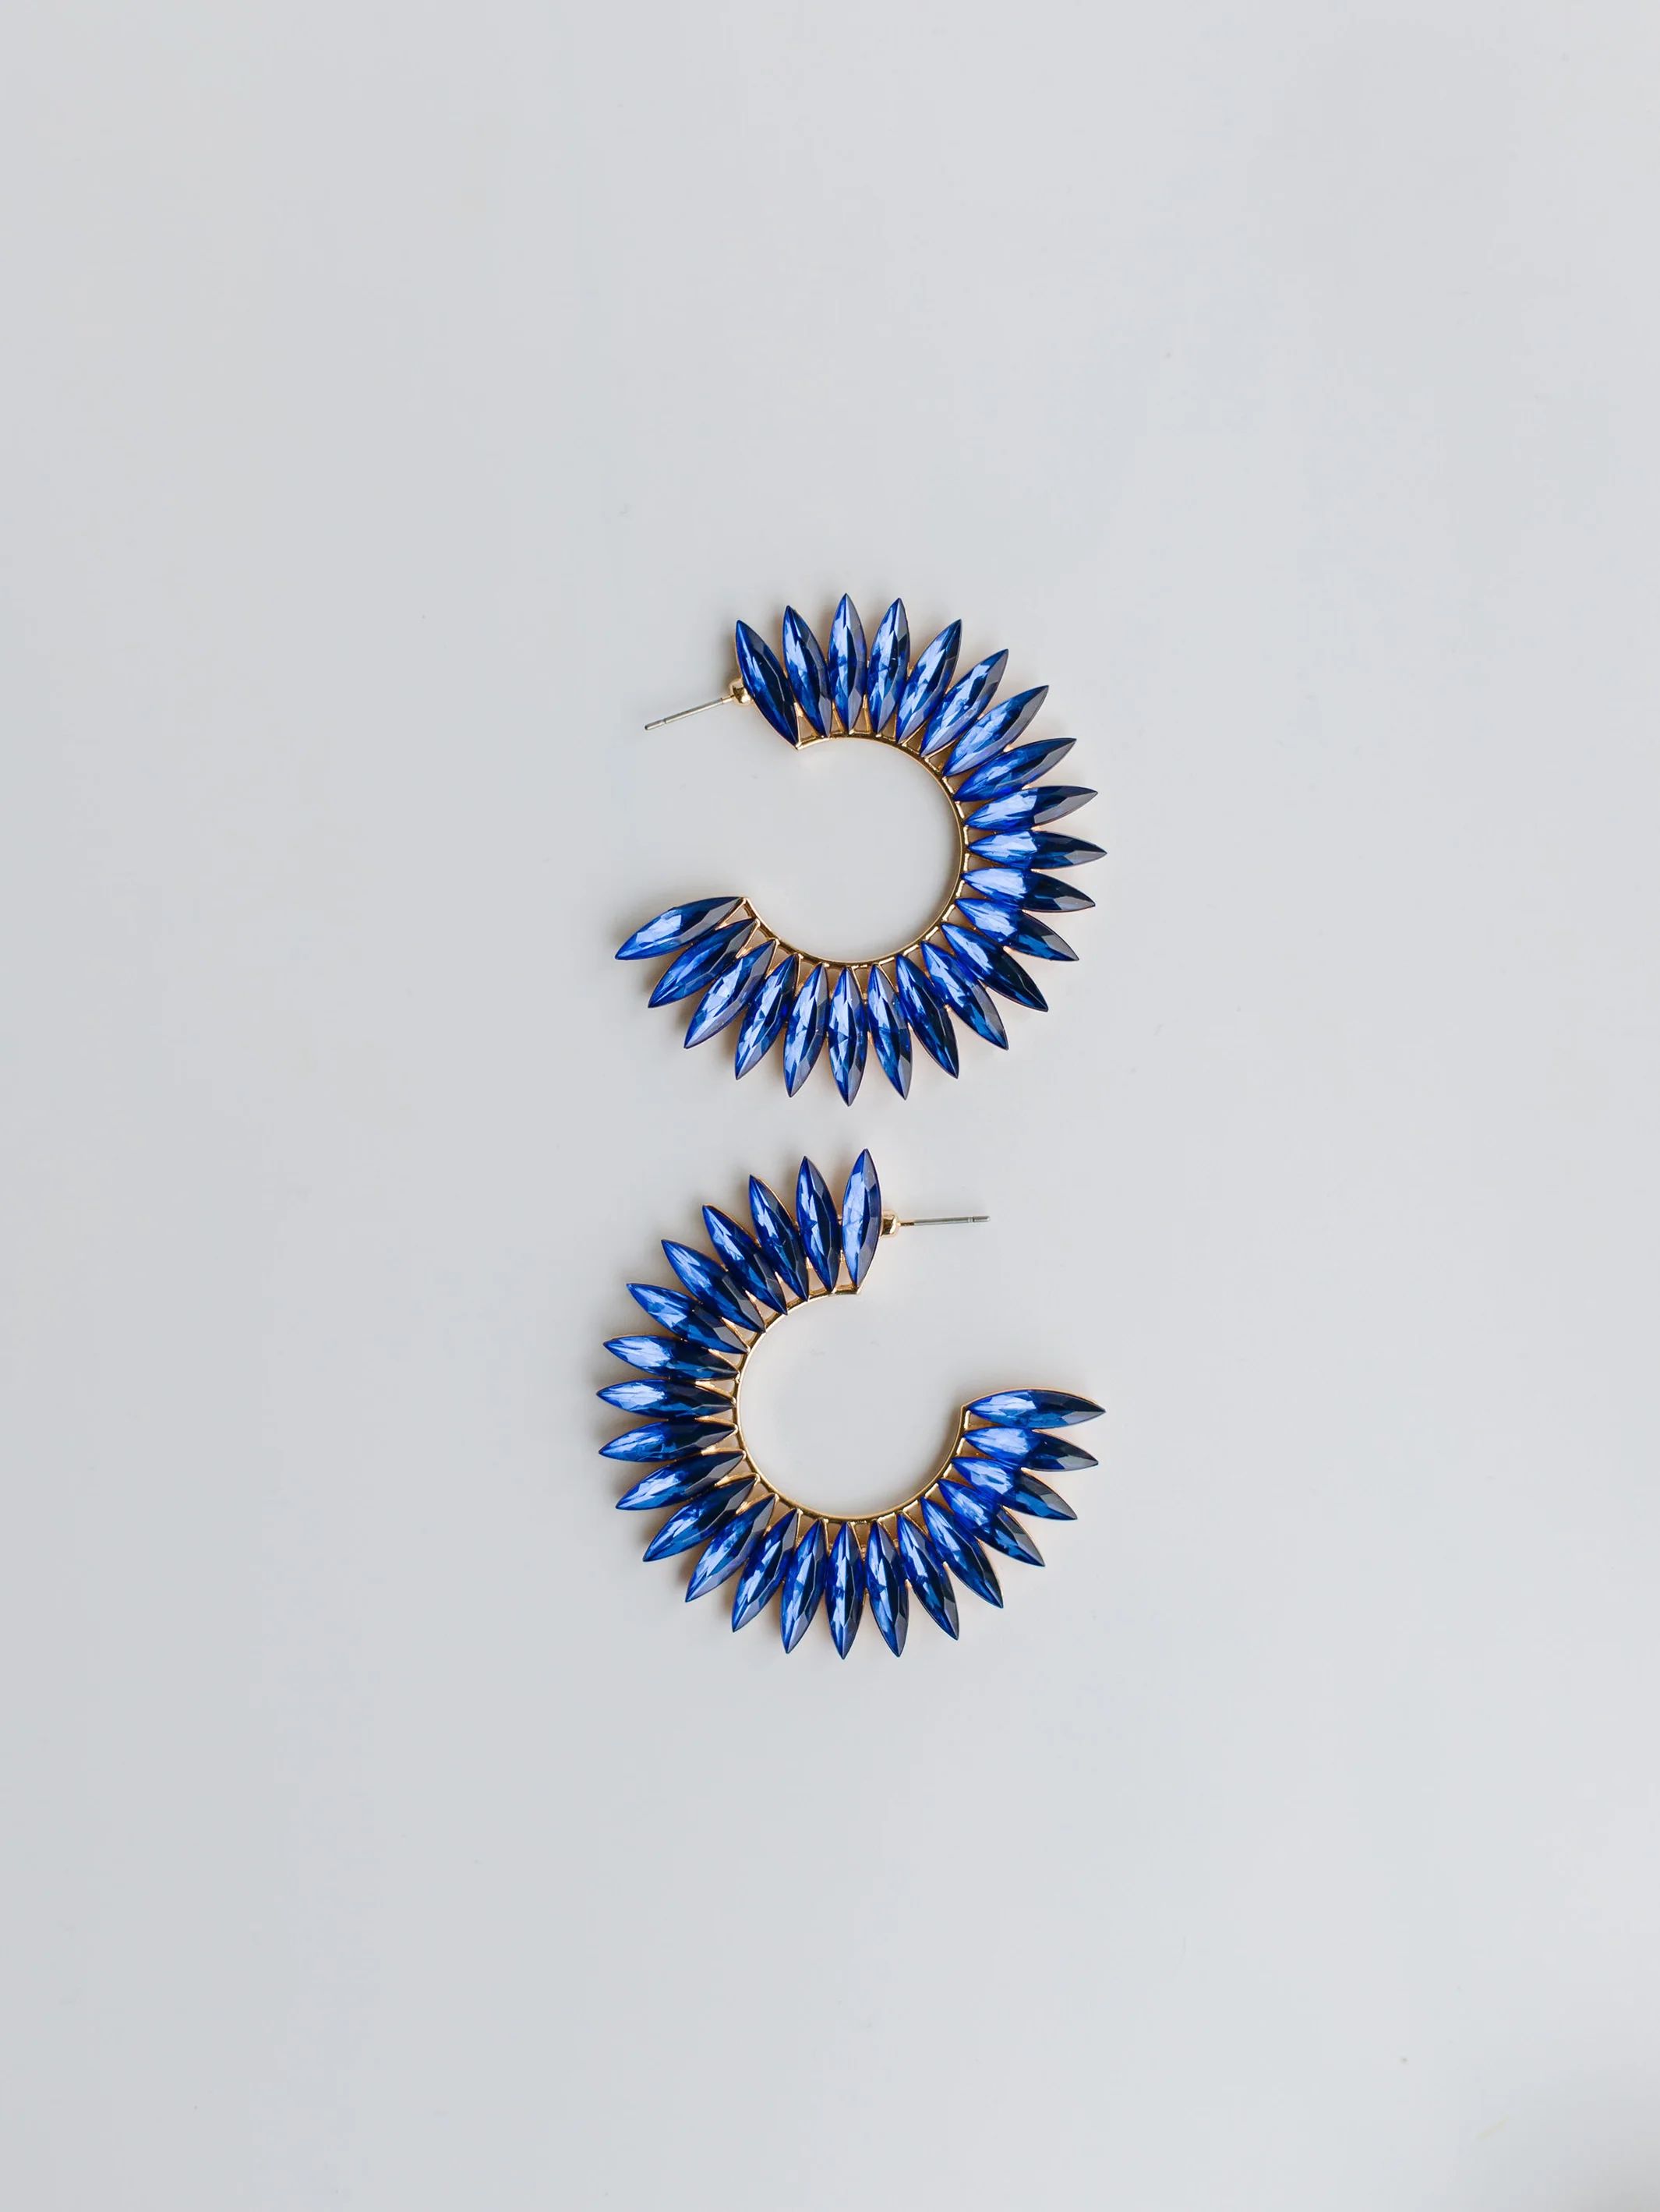 Eileen Blue Earrings | Michelle McDowell